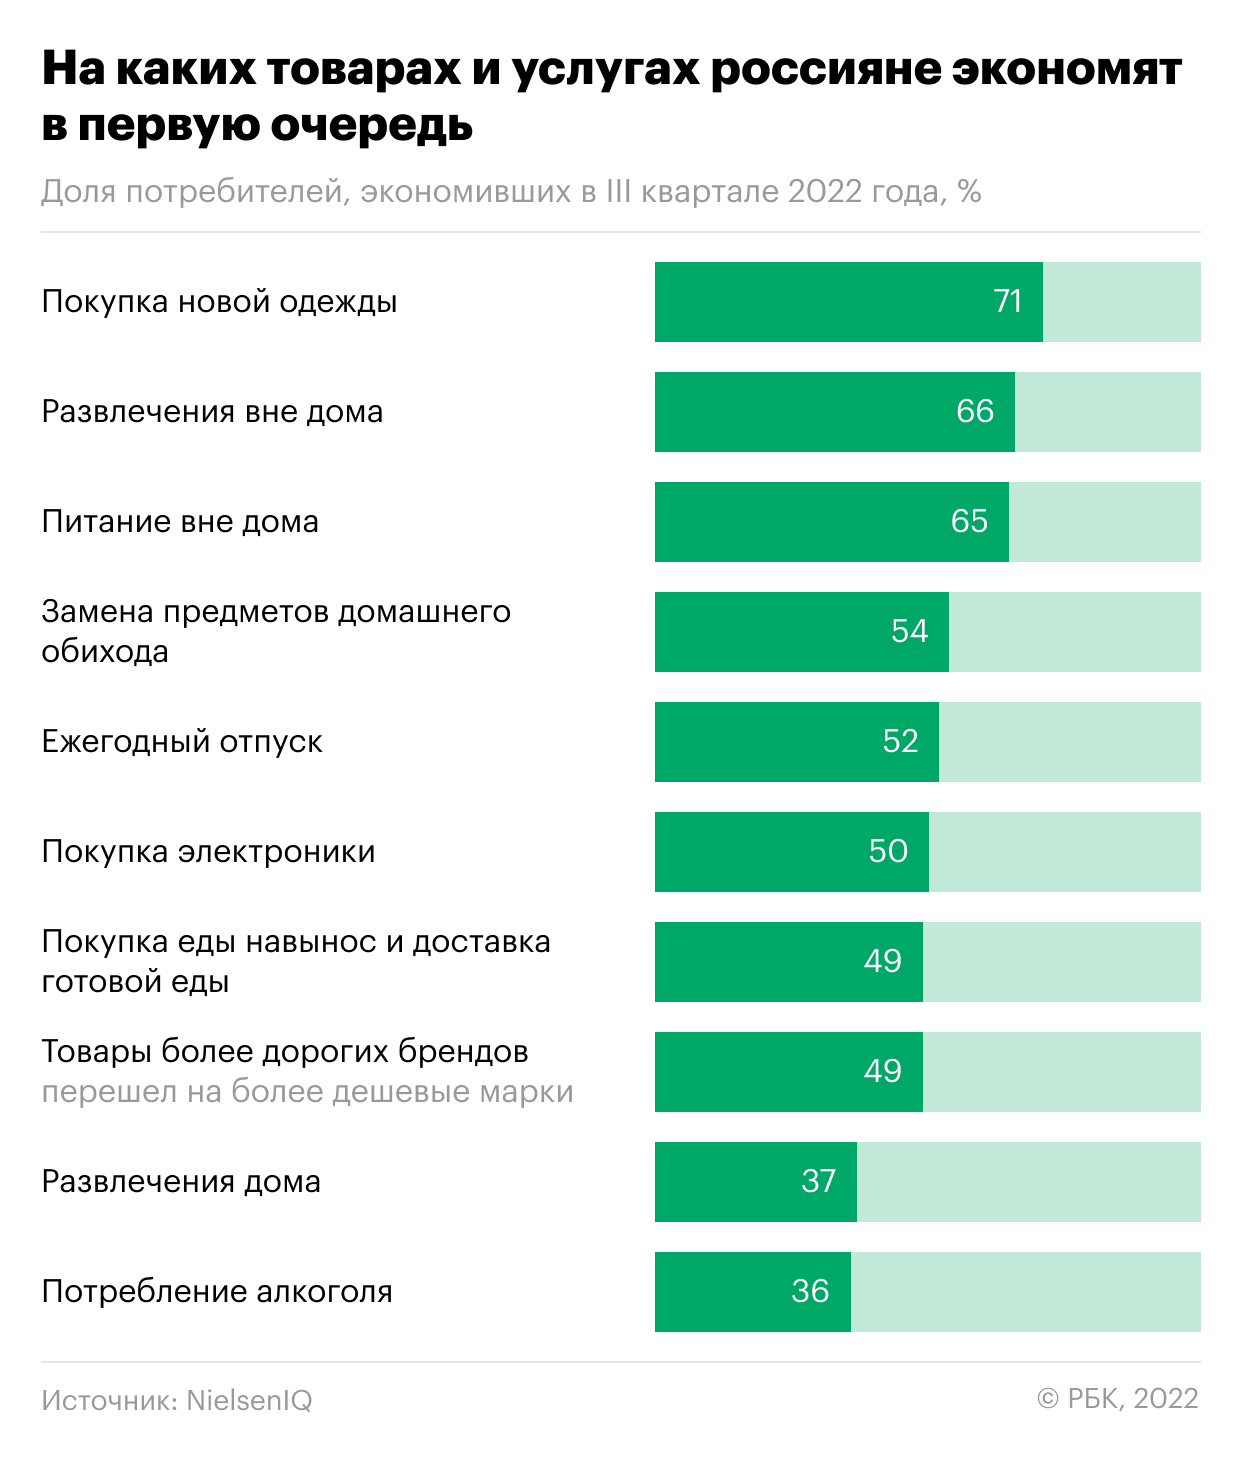 Две трети россиян оказались не готовы экономить на алкоголе